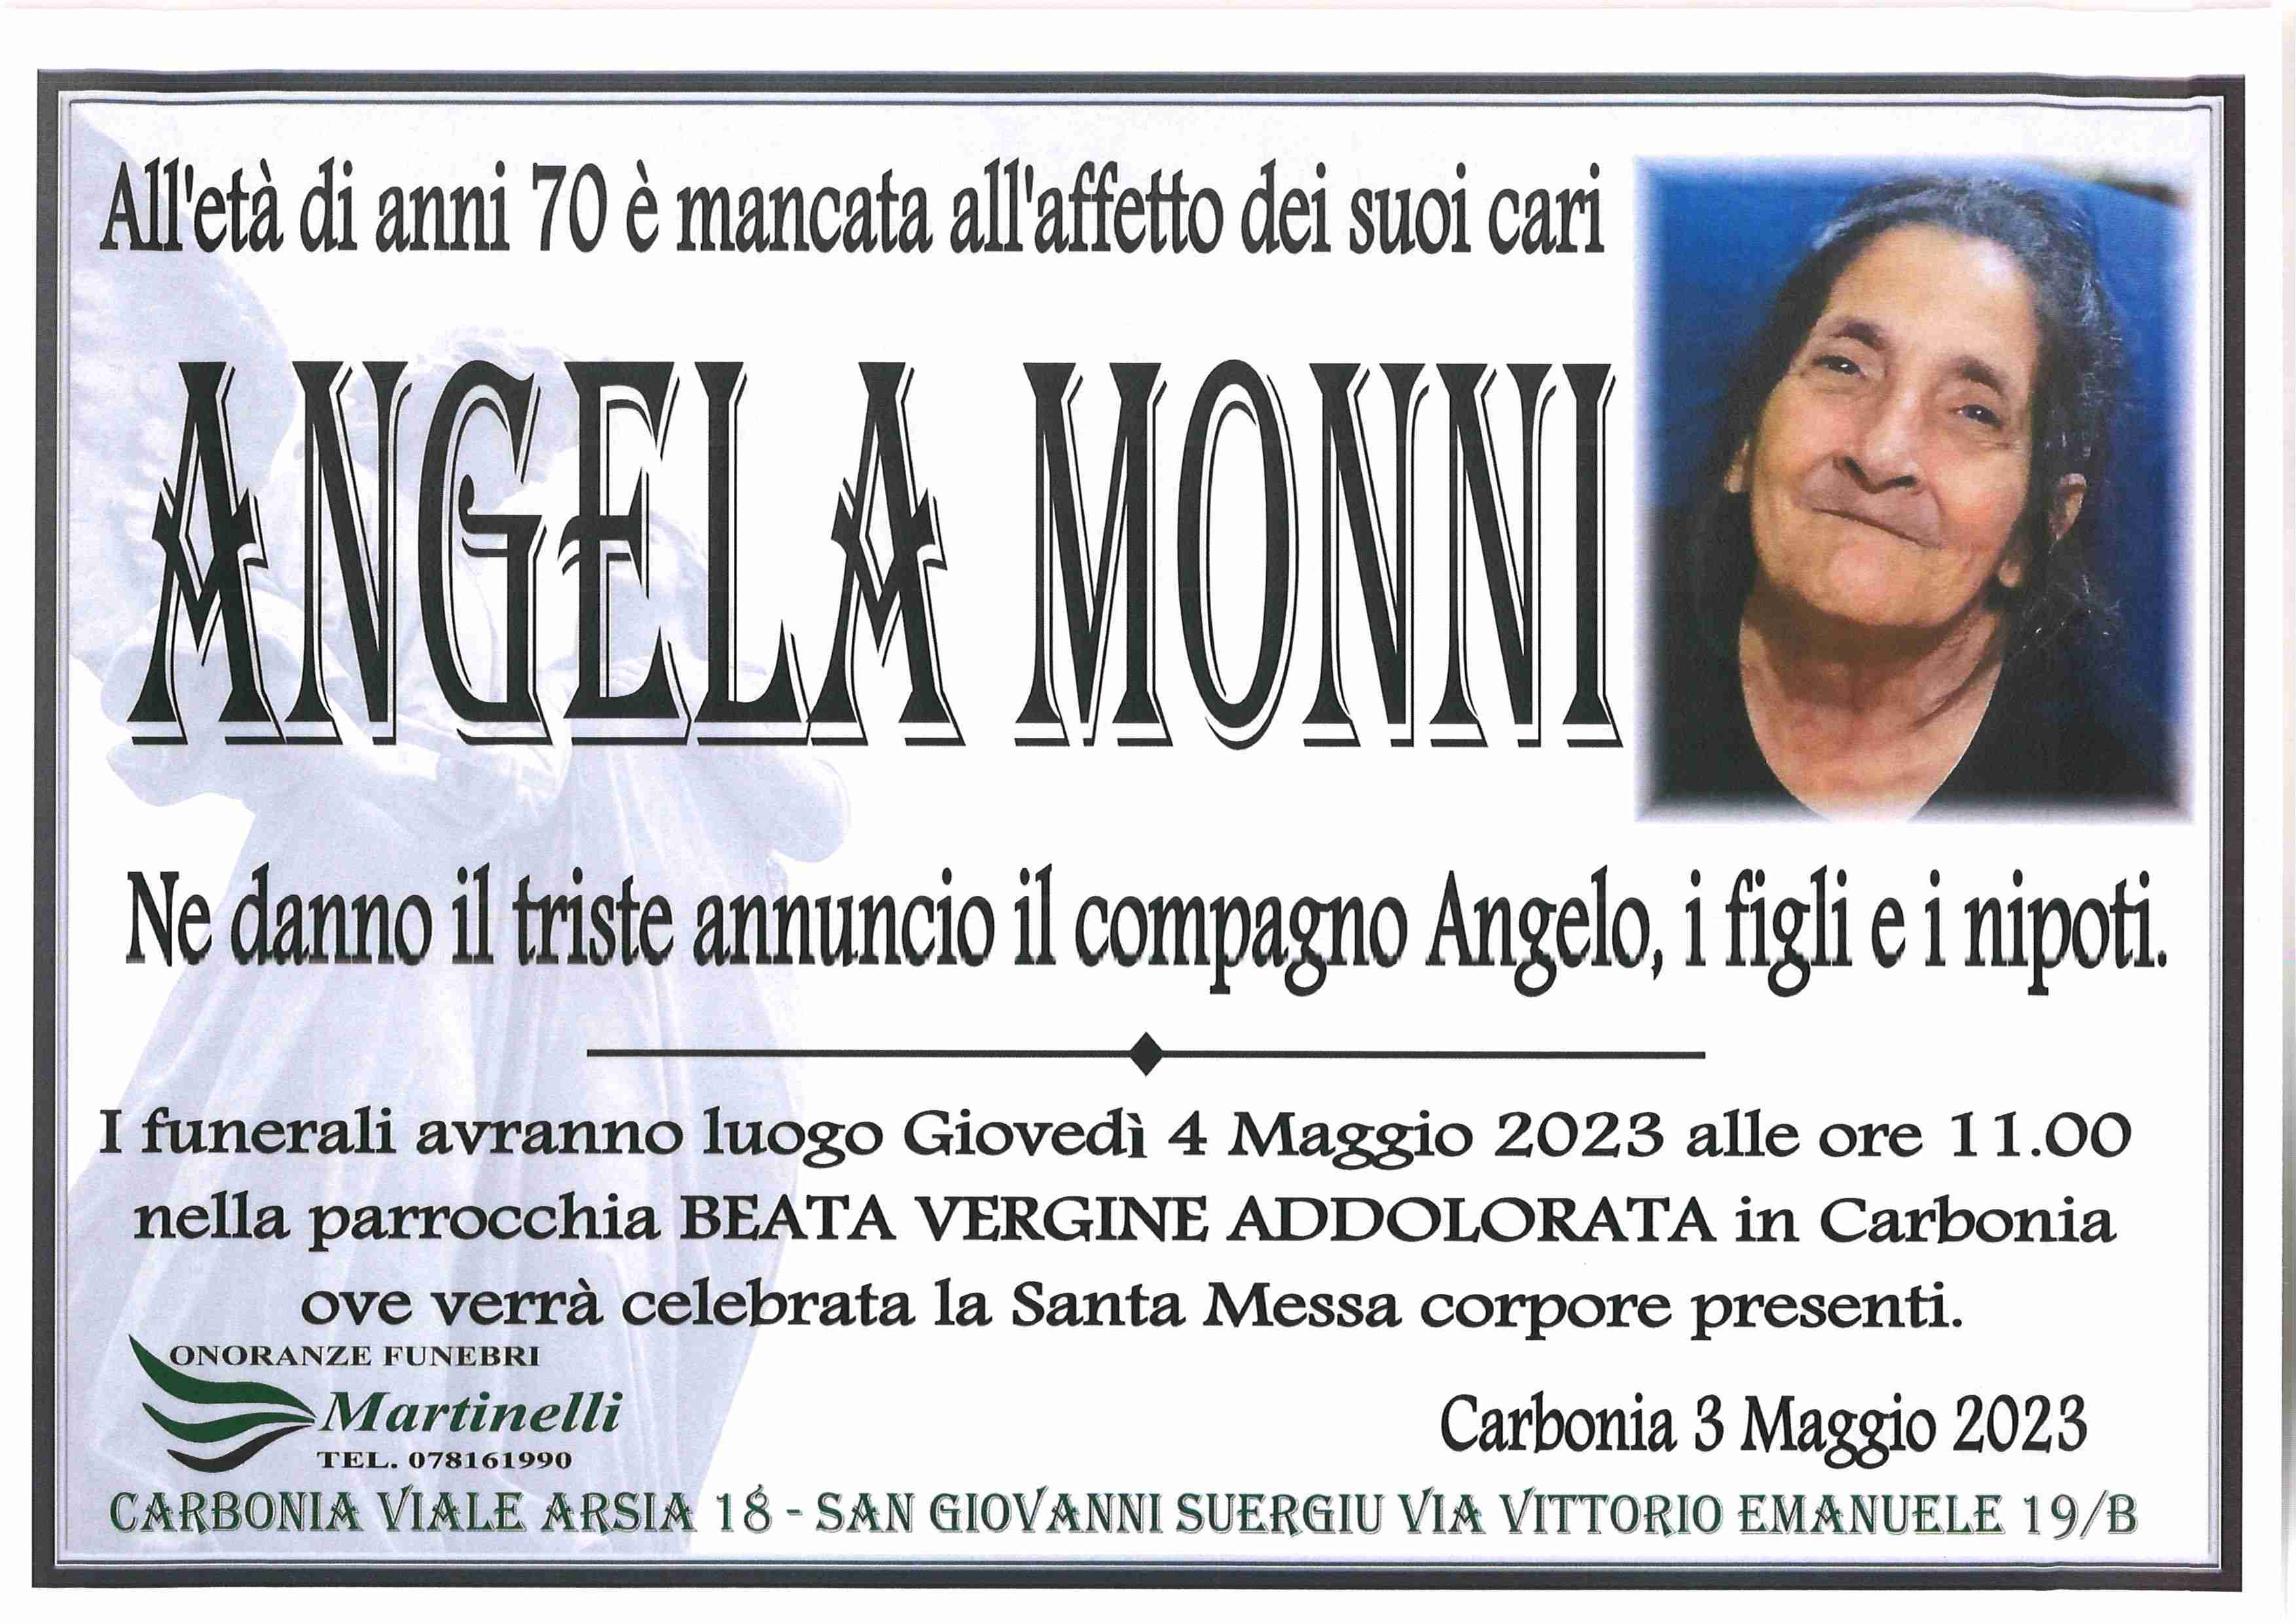 Angela Monni